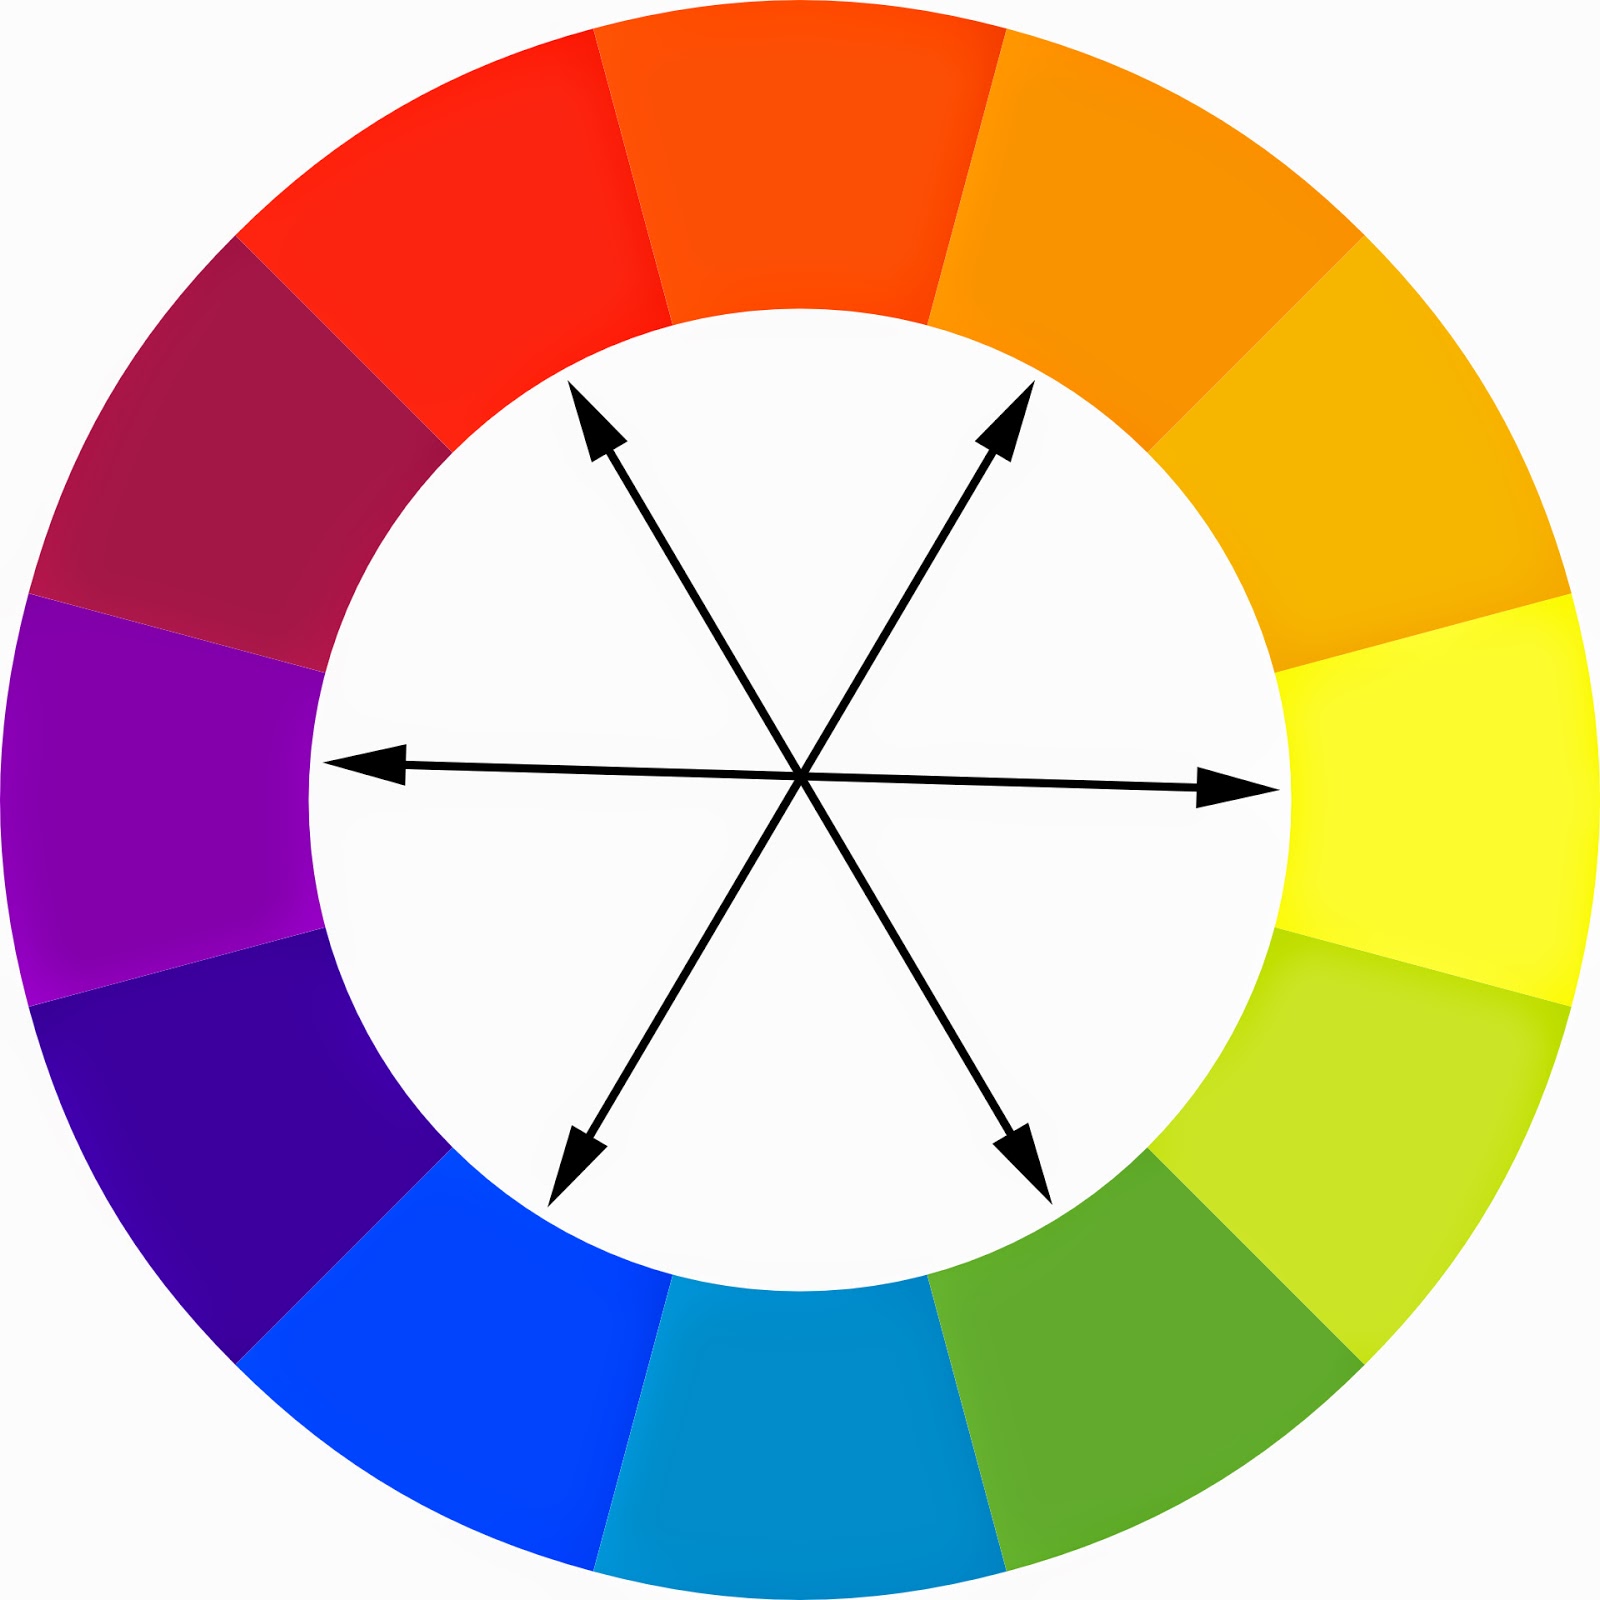  نکات استفاده از رنگ ها در دکوراسیون داخلی